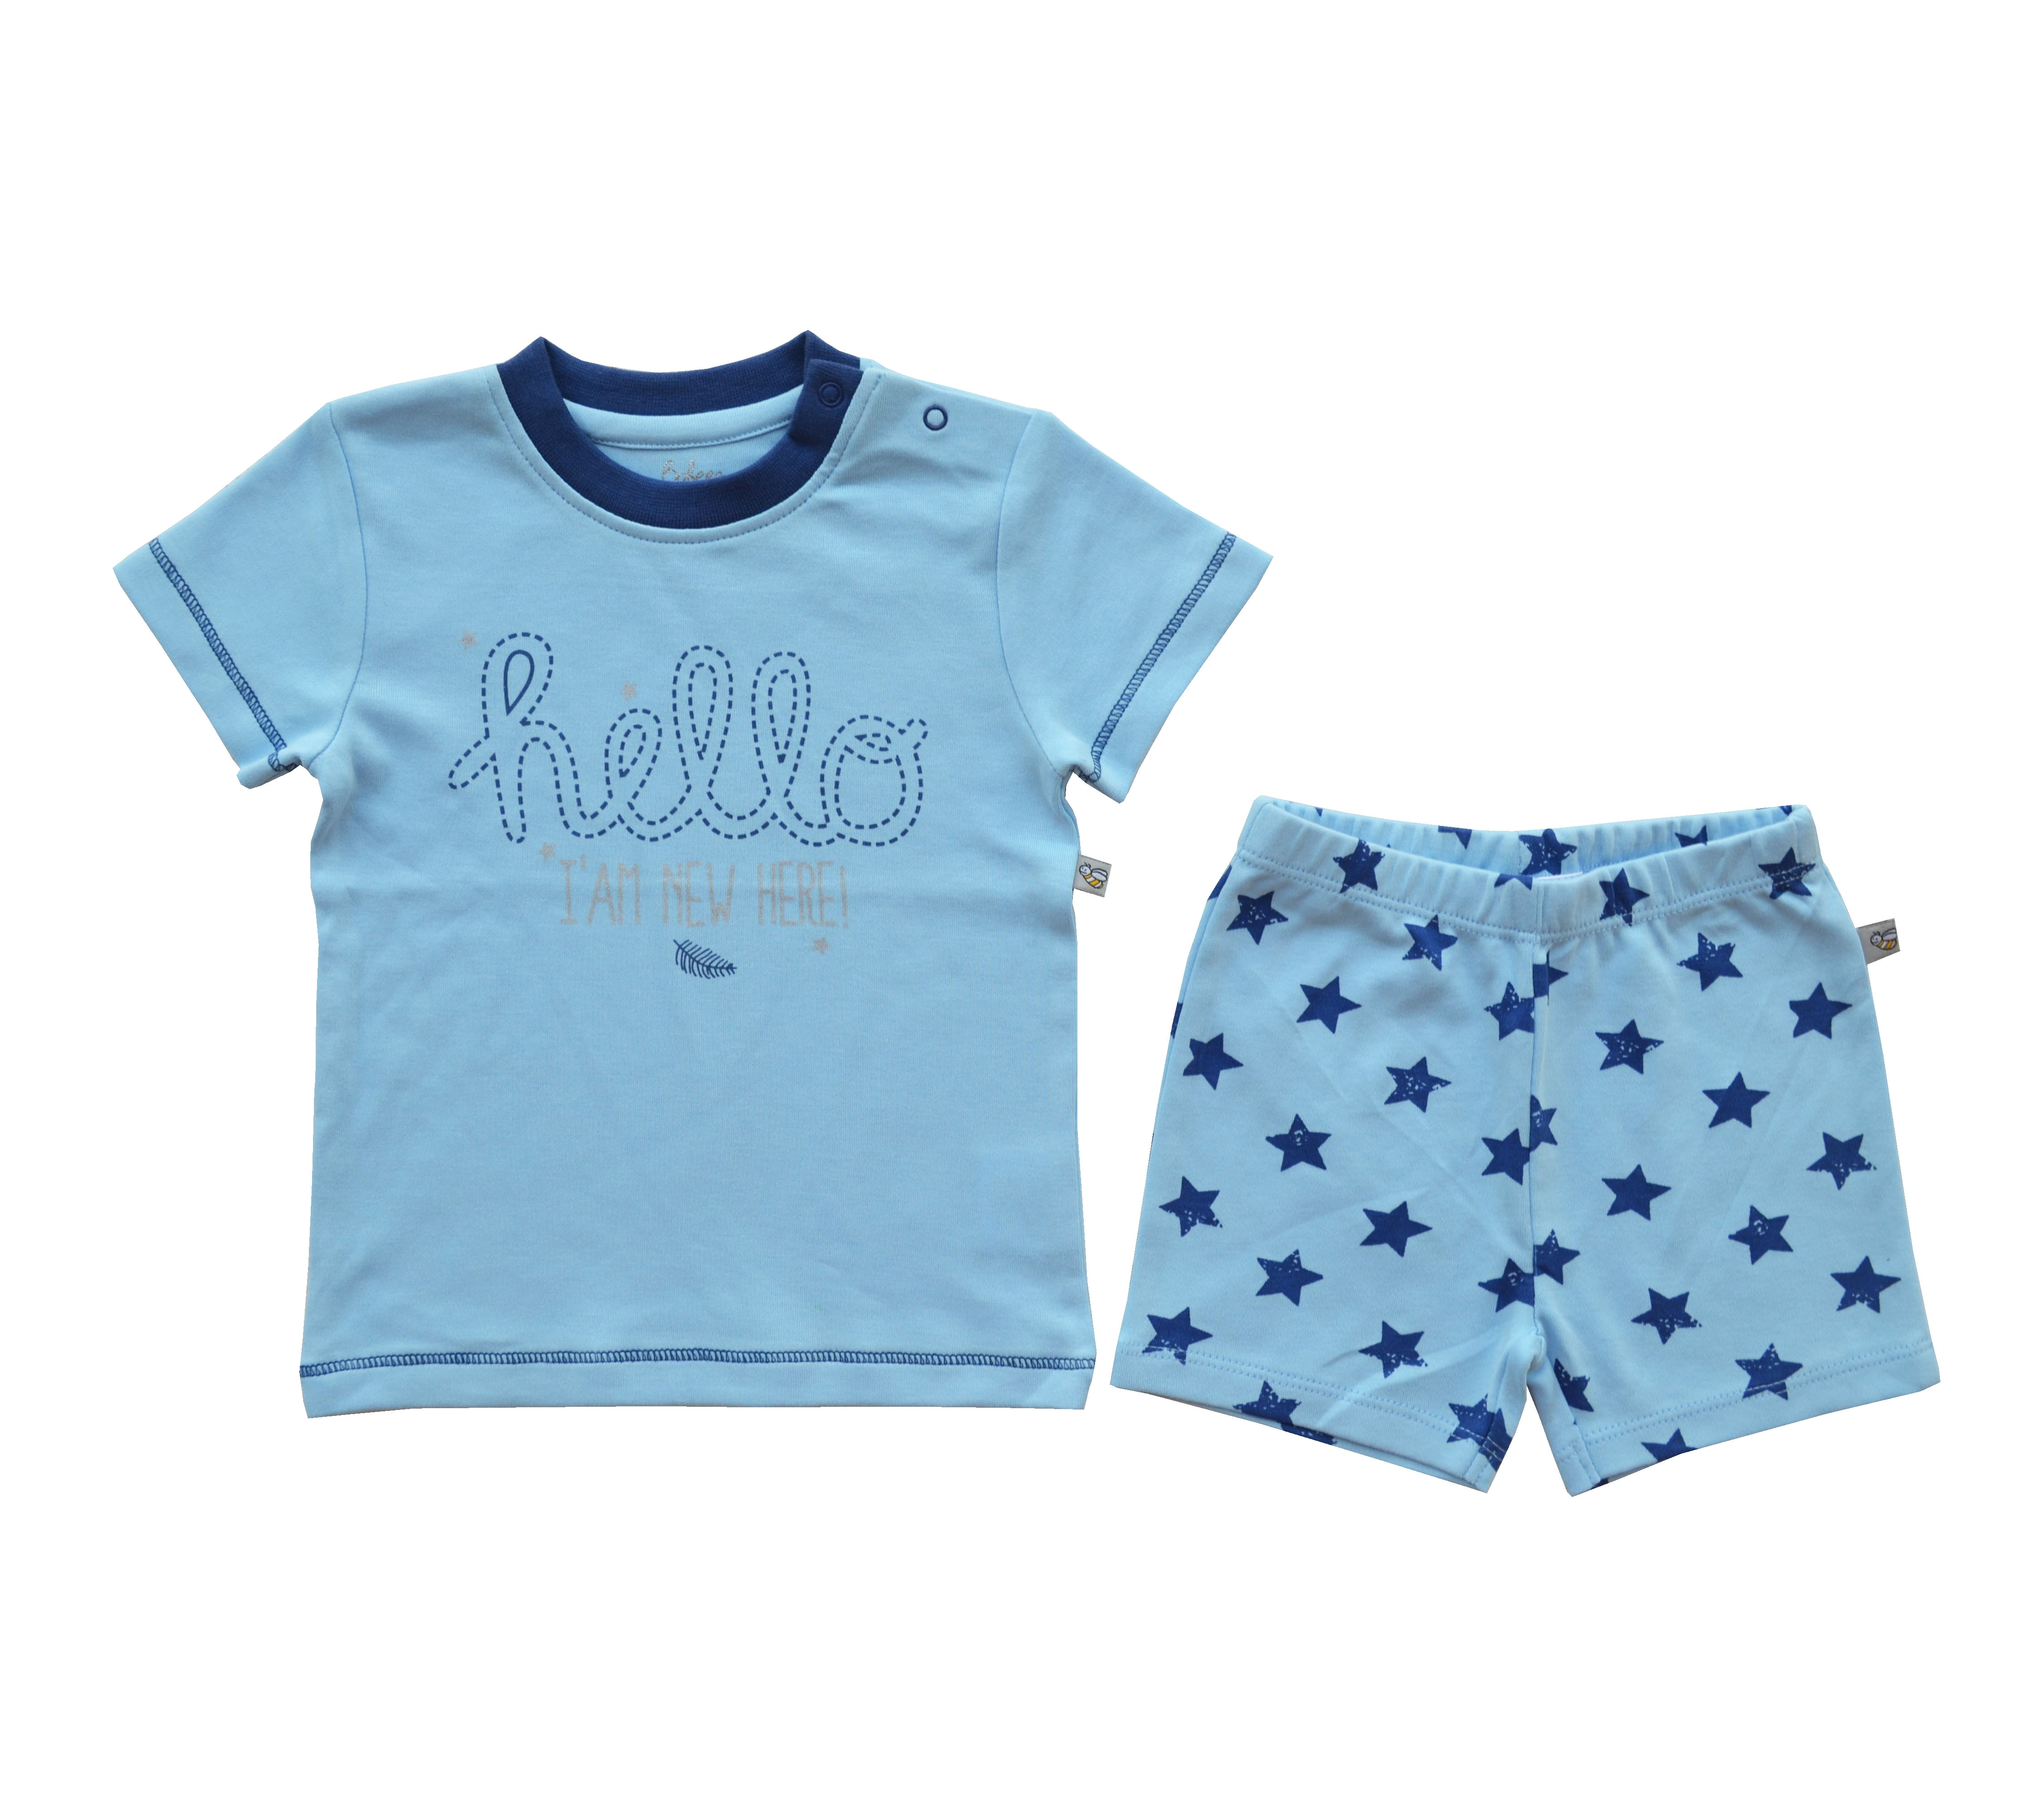 Babeez | Blue Hello Print T-Shirt + Allover Star Print Shorty Set (100% Cotton Interlock Biowash) undefined